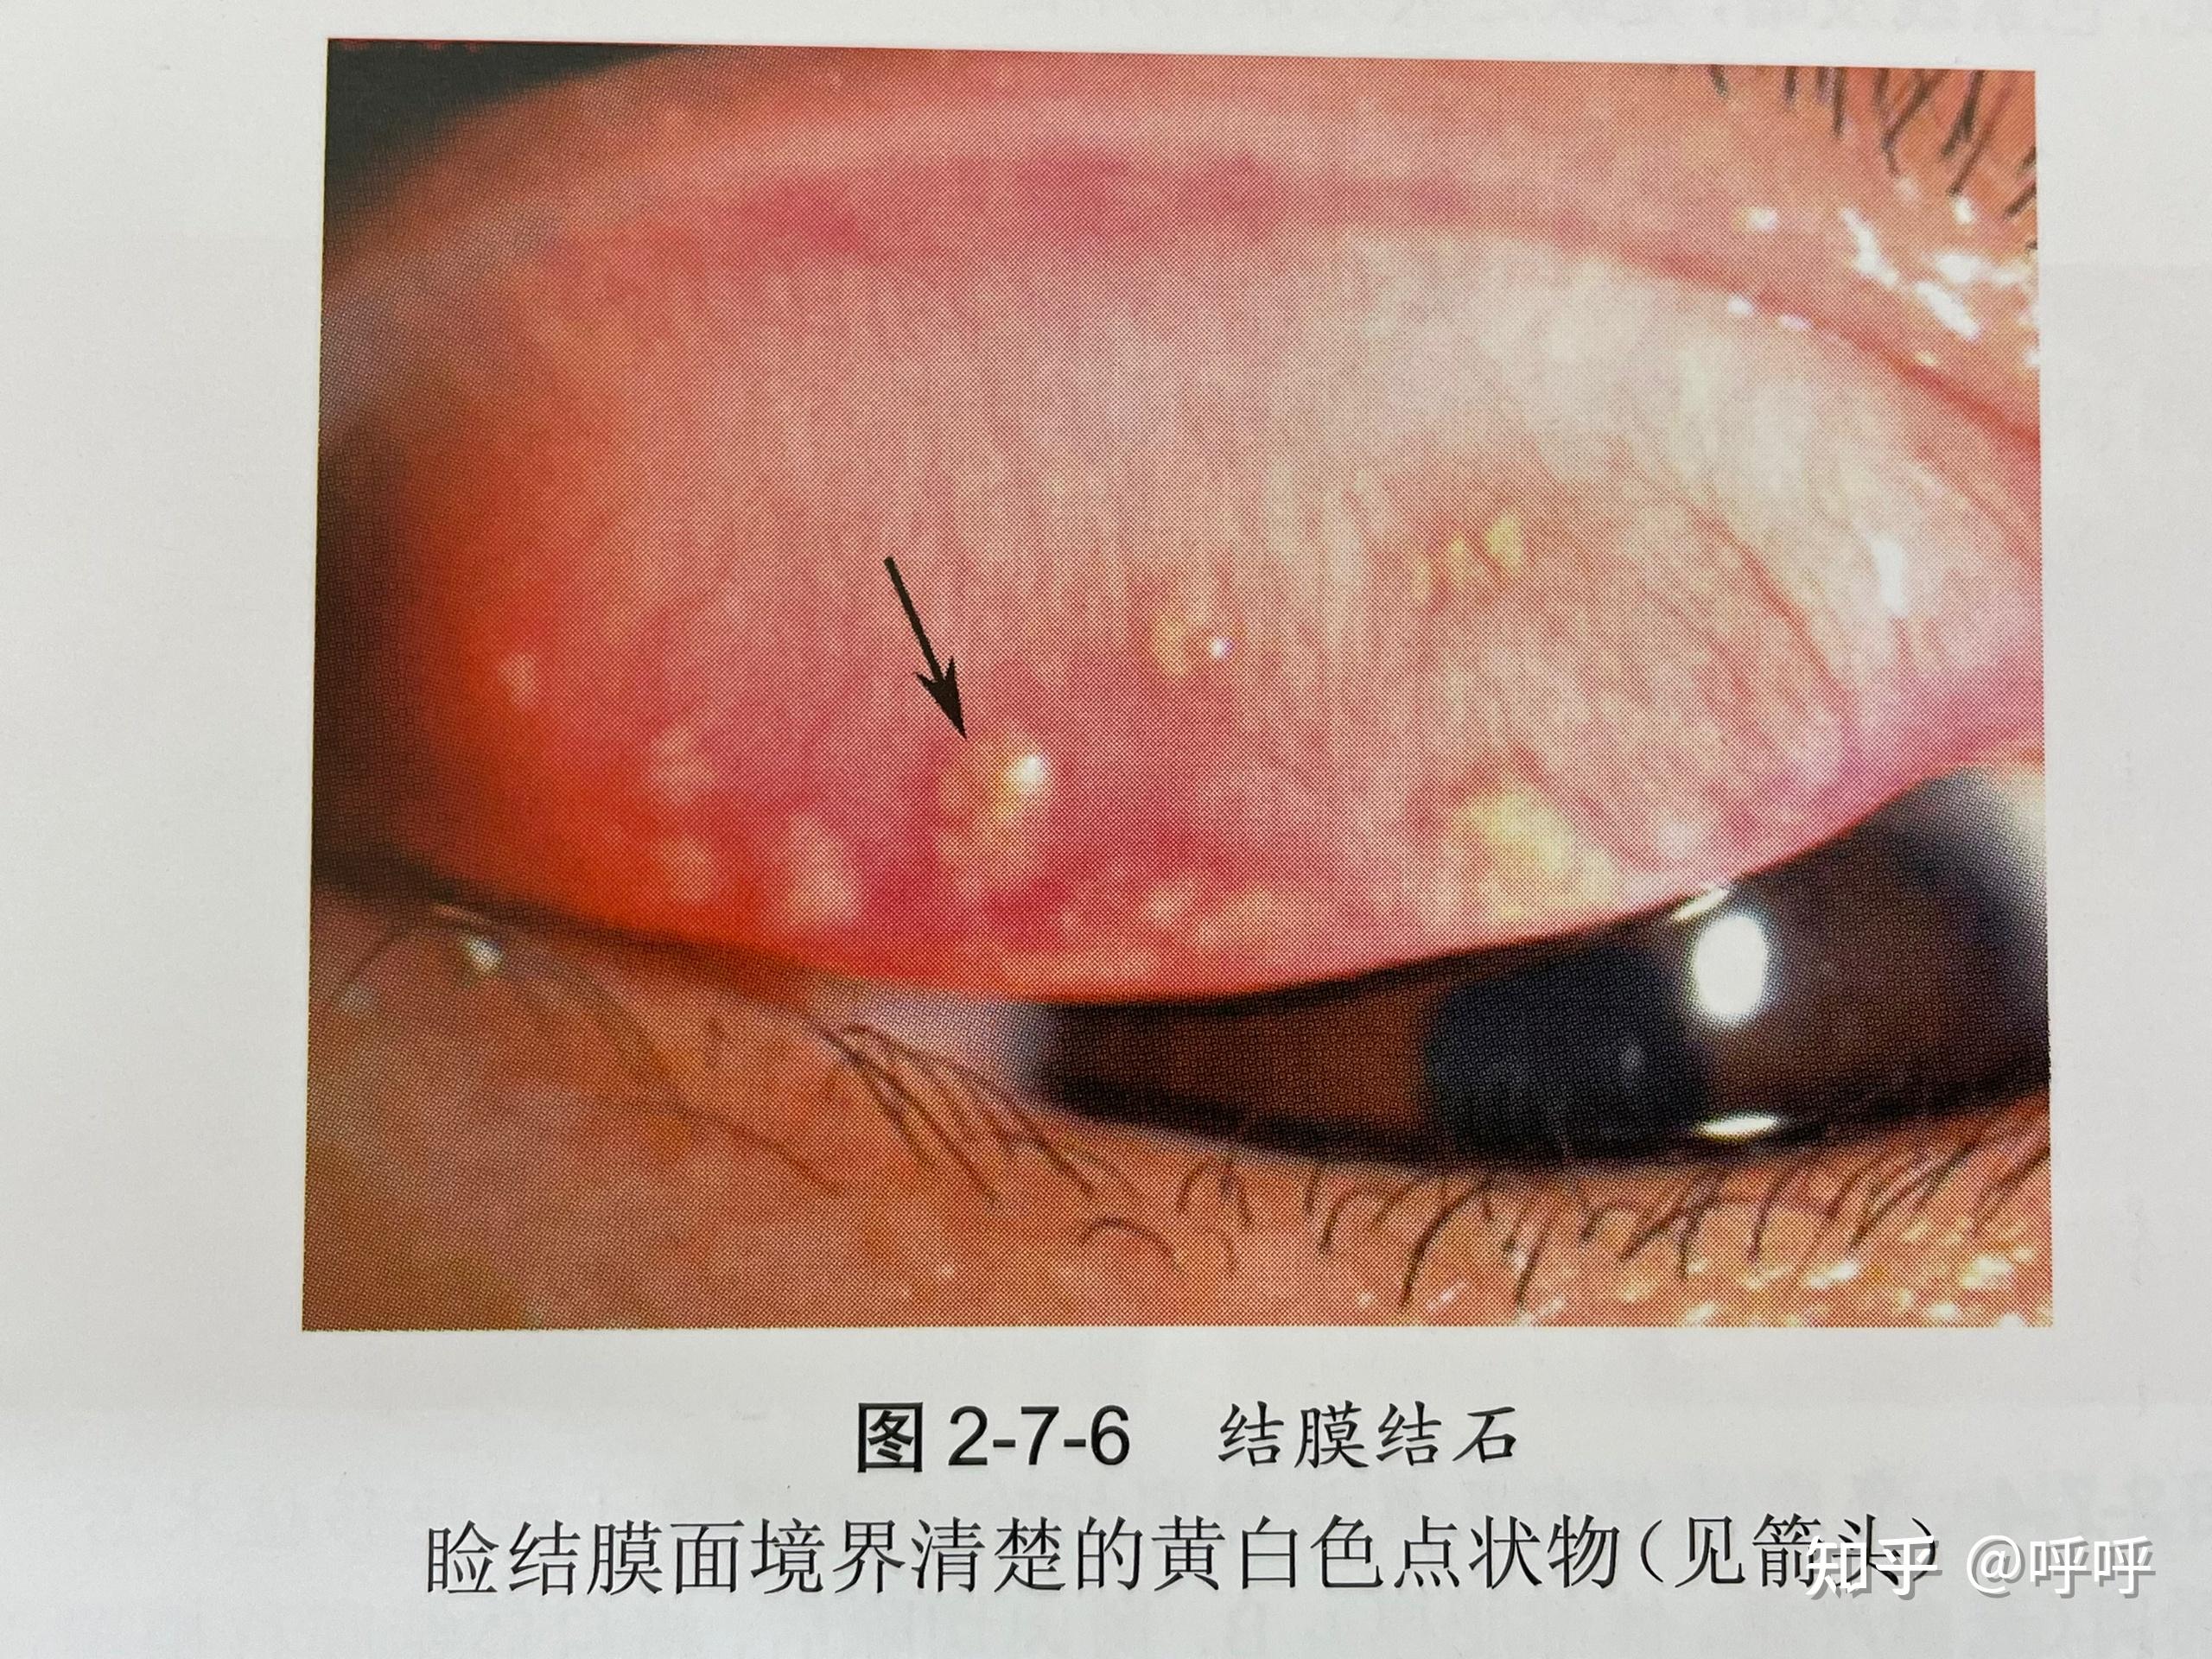 眼结石并不是真正的结石,是眼结膜(即眼睑,眼皮的内侧面)上出现的颗粒